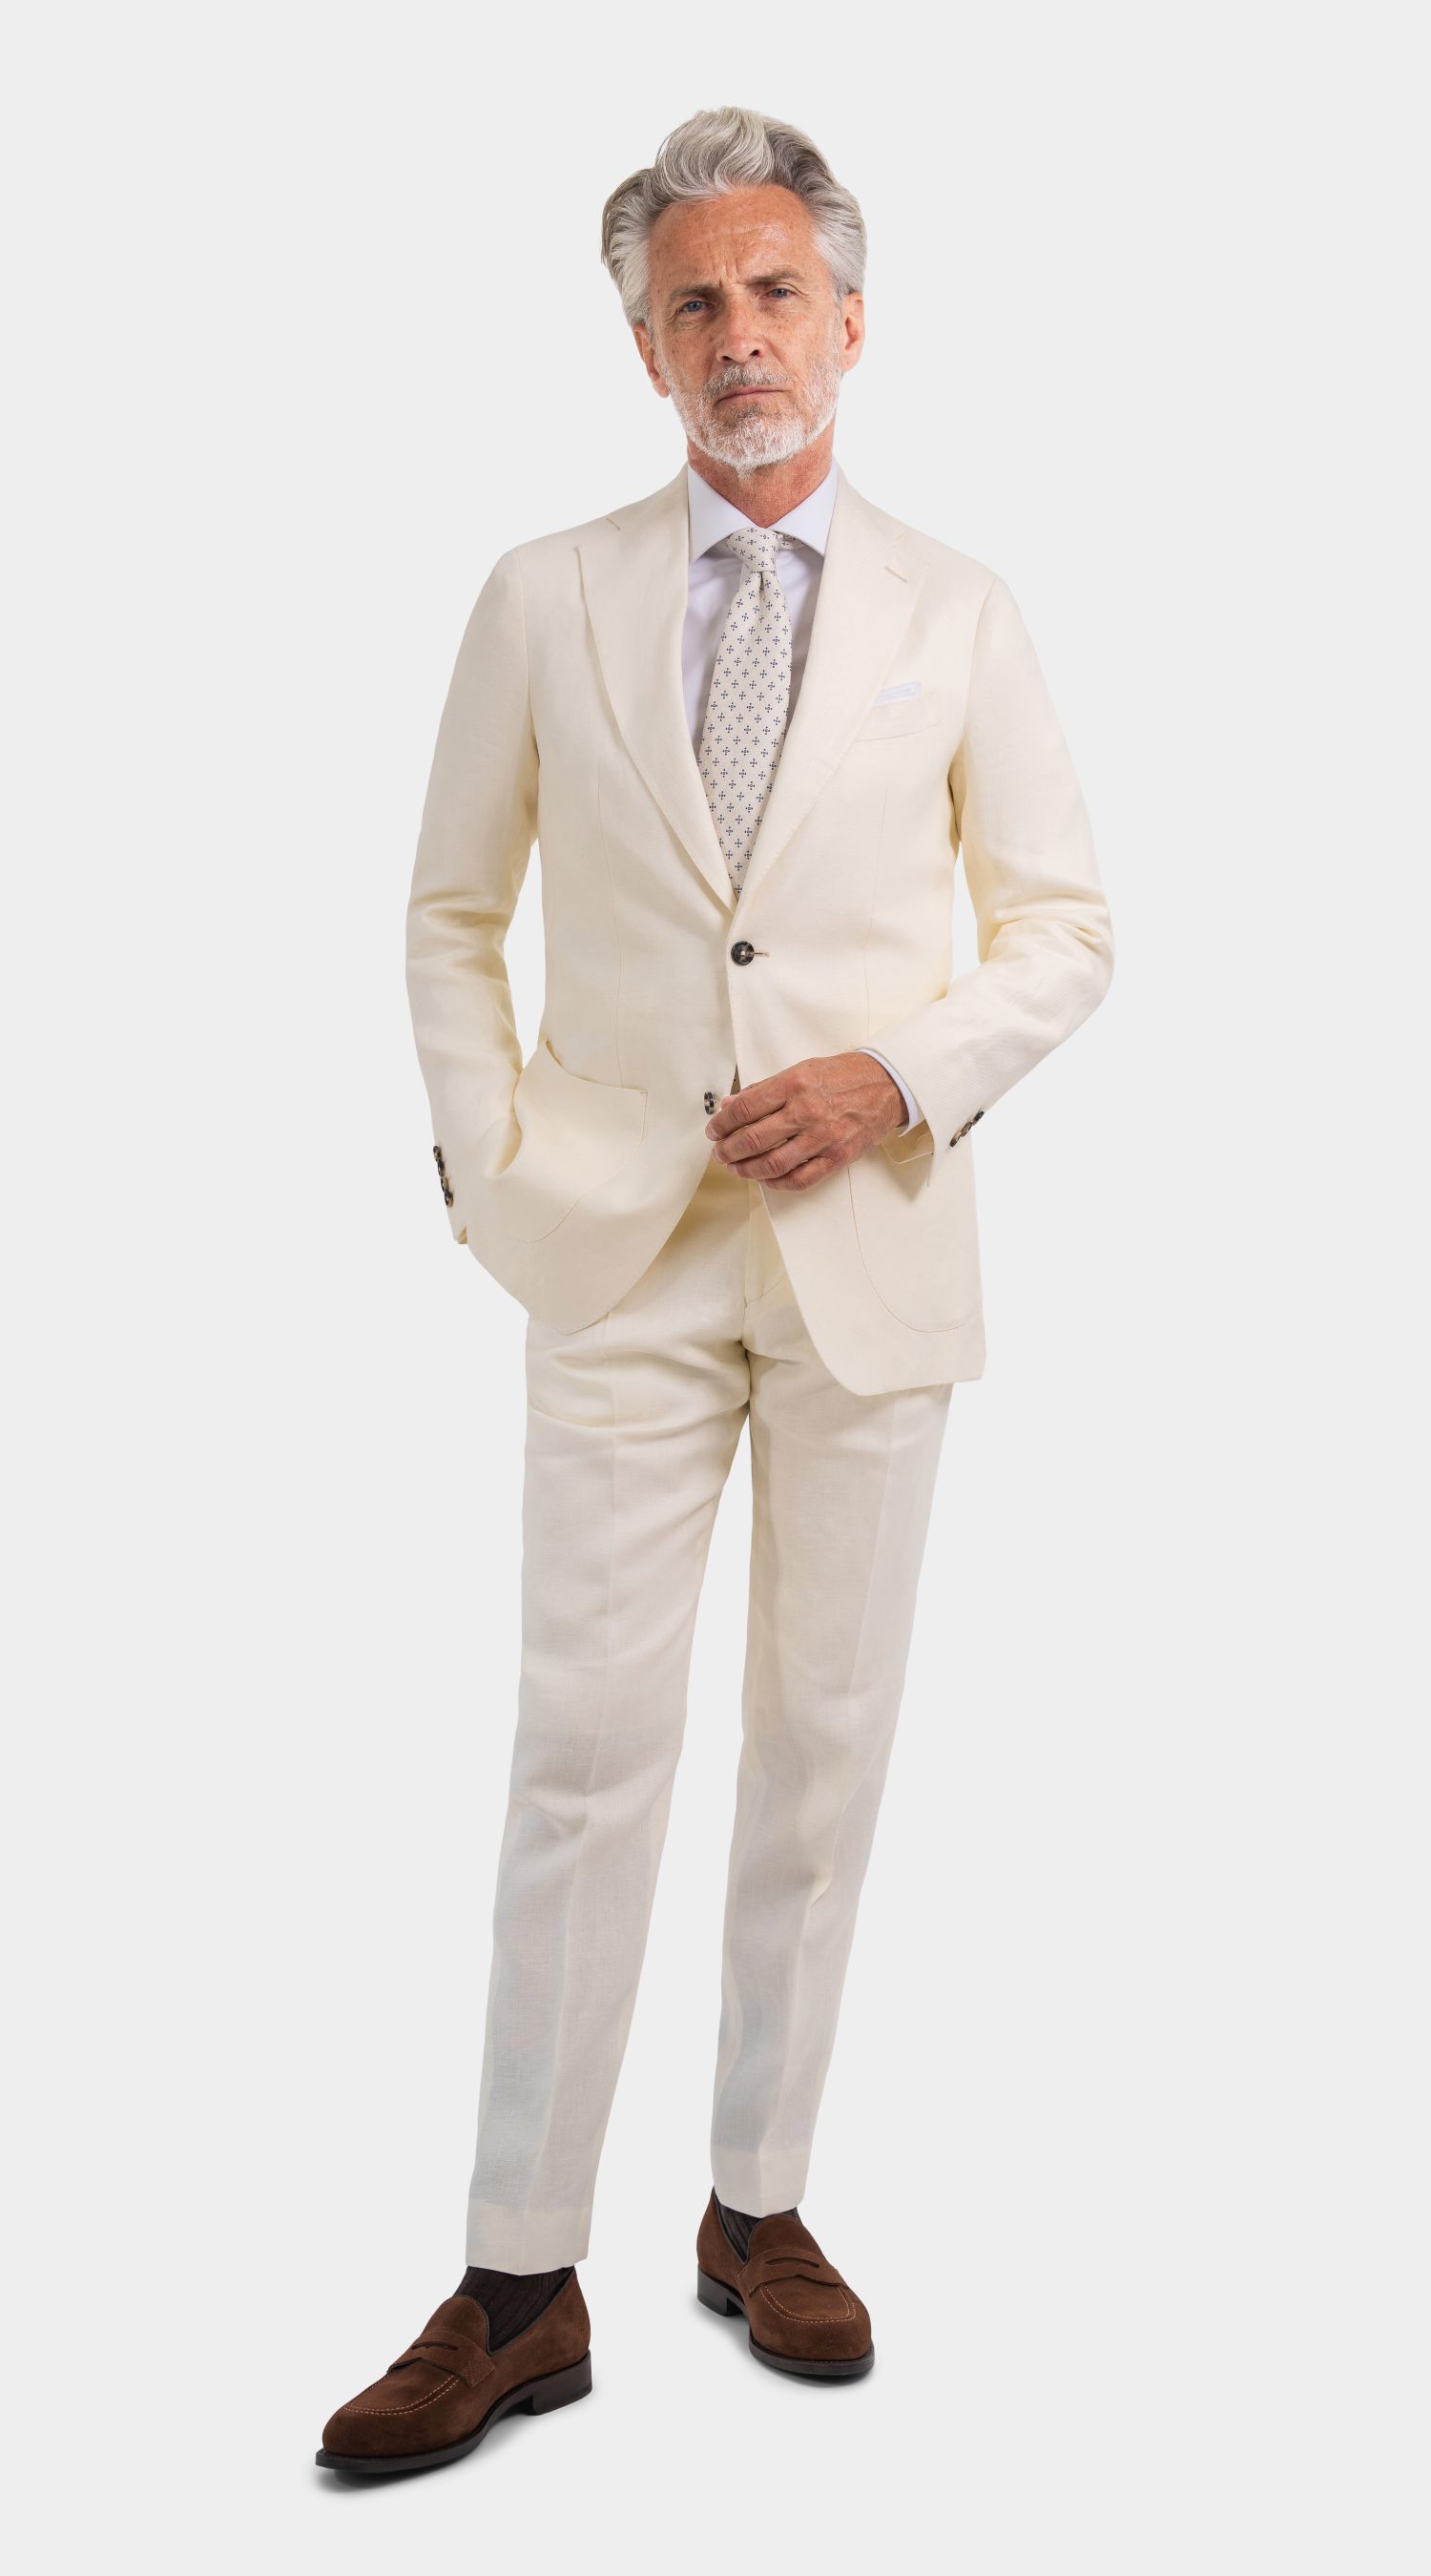 Mond Custom Ivory Linen Twill Suit, herren anzug creme hochzeit